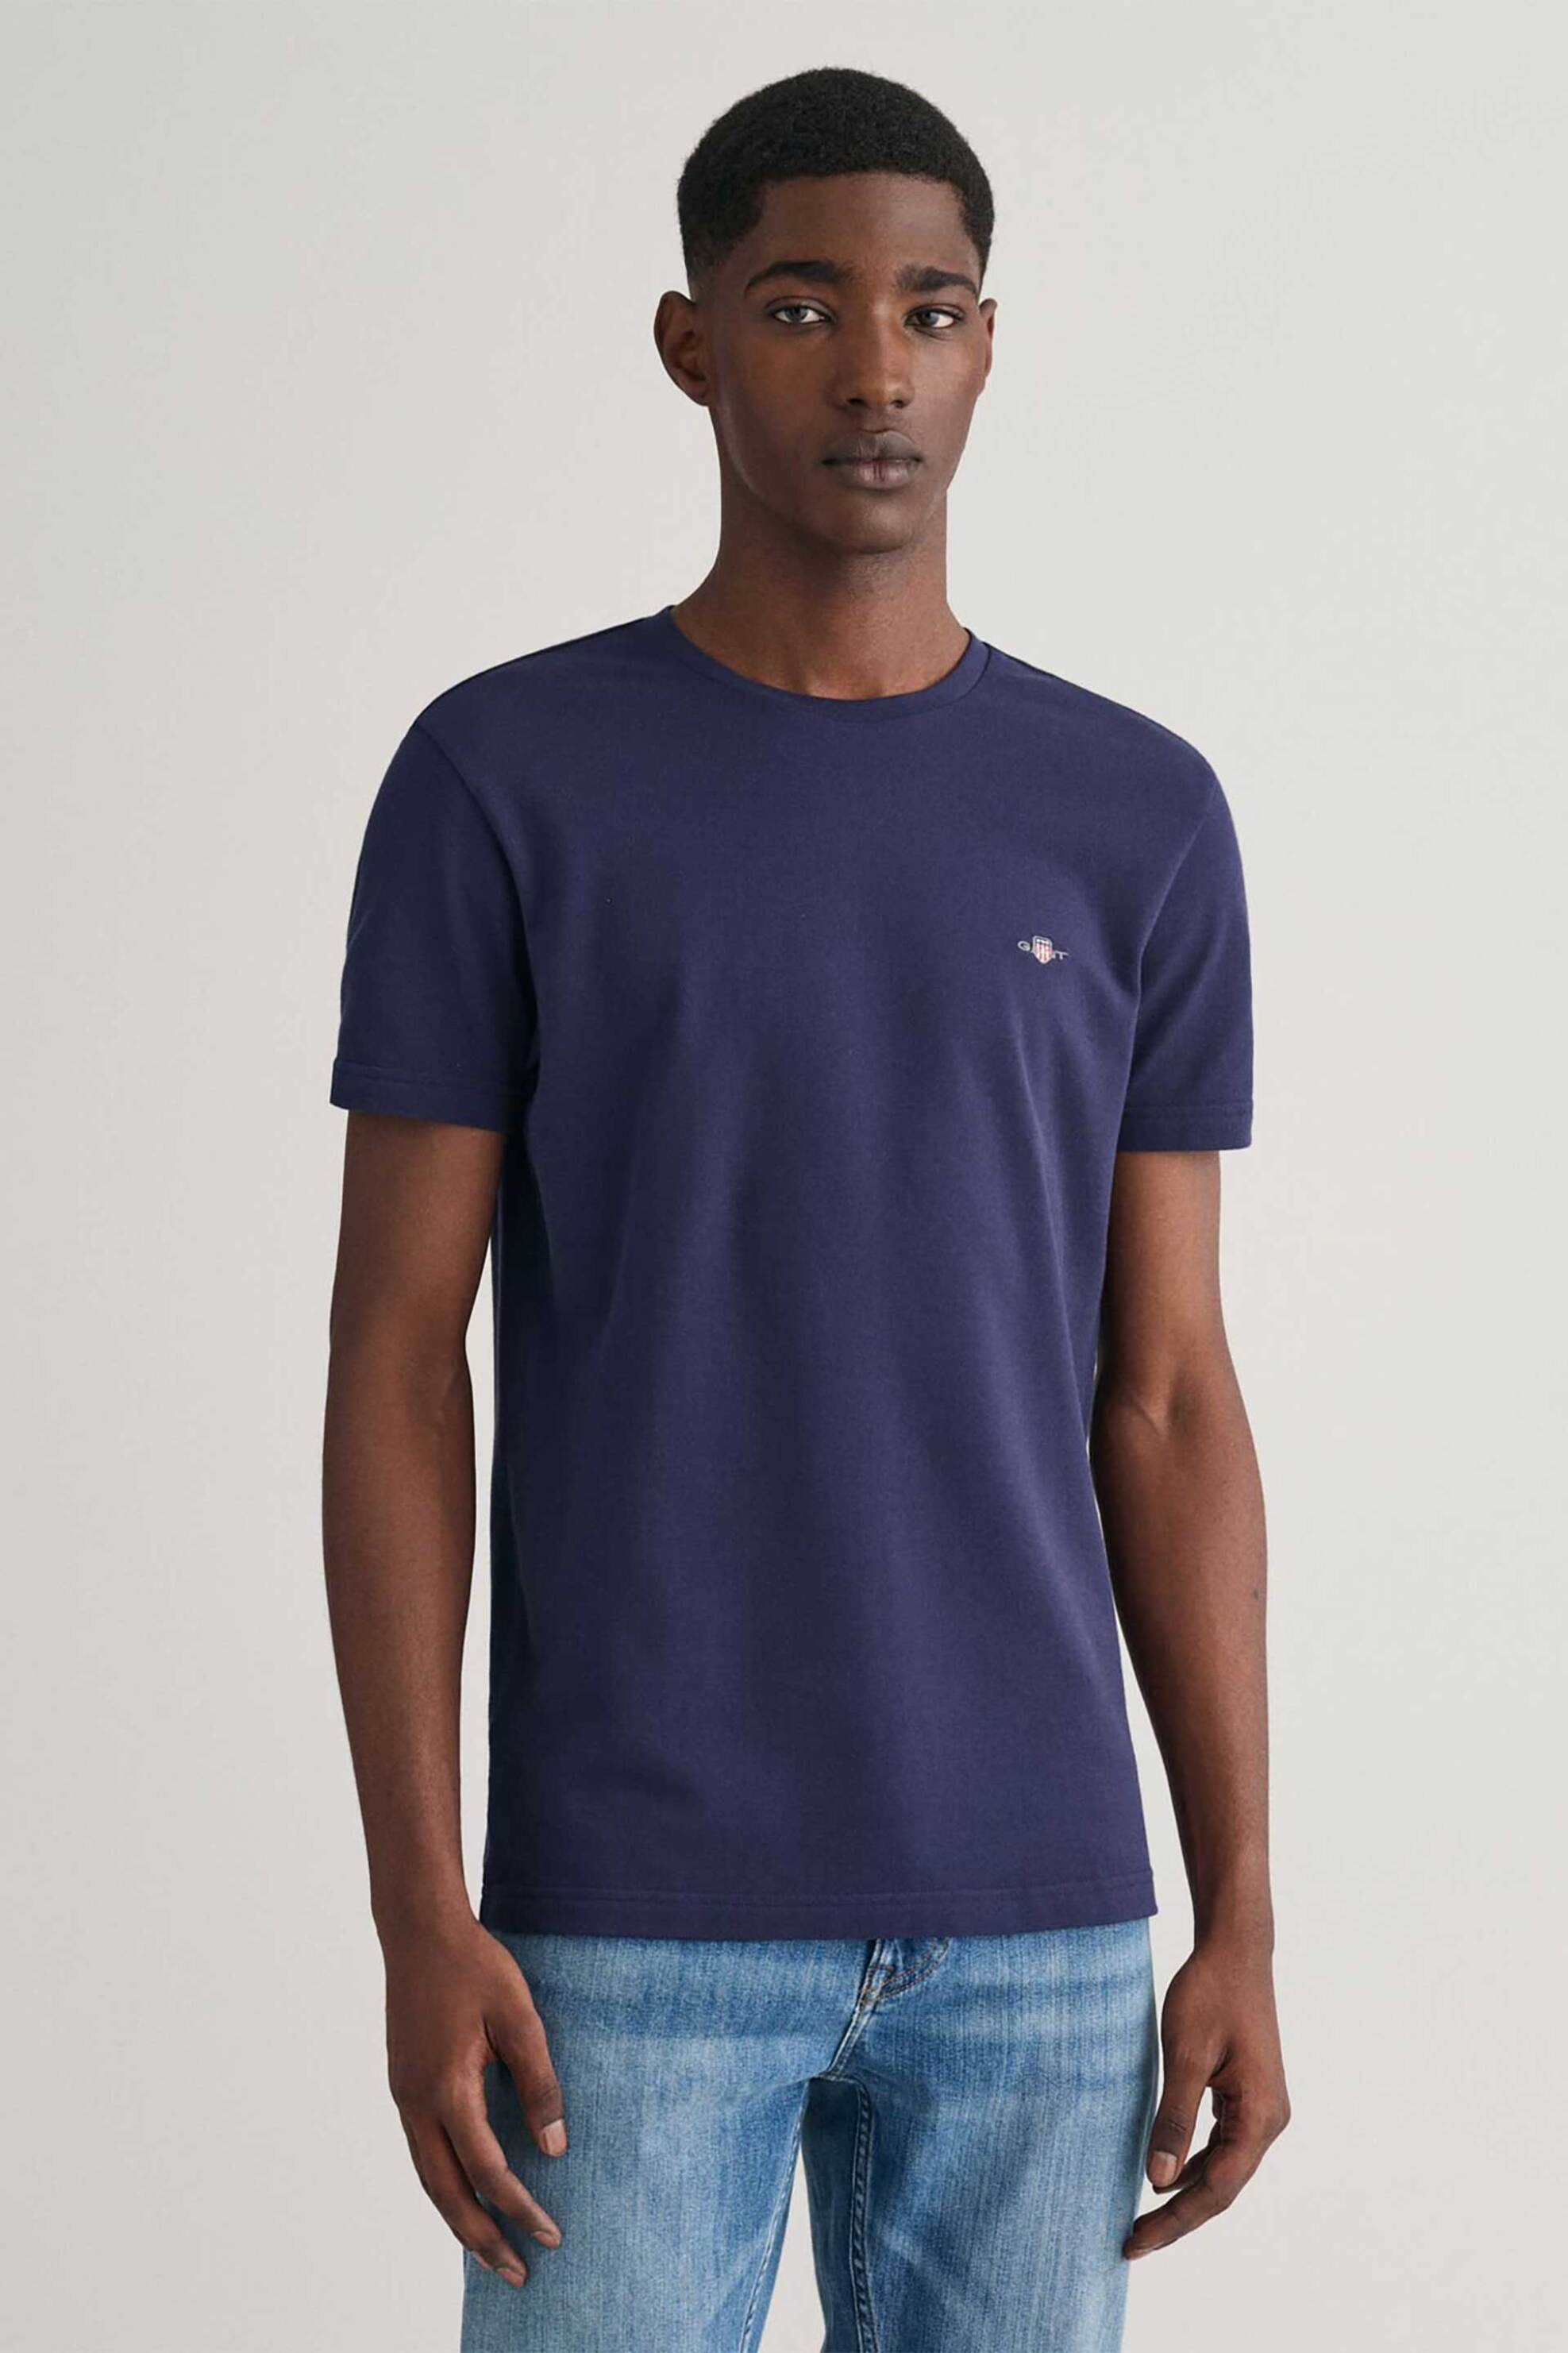 Ανδρική Μόδα > Ανδρικά Ρούχα > Ανδρικές Μπλούζες > Ανδρικά T-Shirts Gant ανδρικό T-shirt πικέ με κεντημένο λογότυπο Slim Fit - 2013033 Μπλε Σκούρο